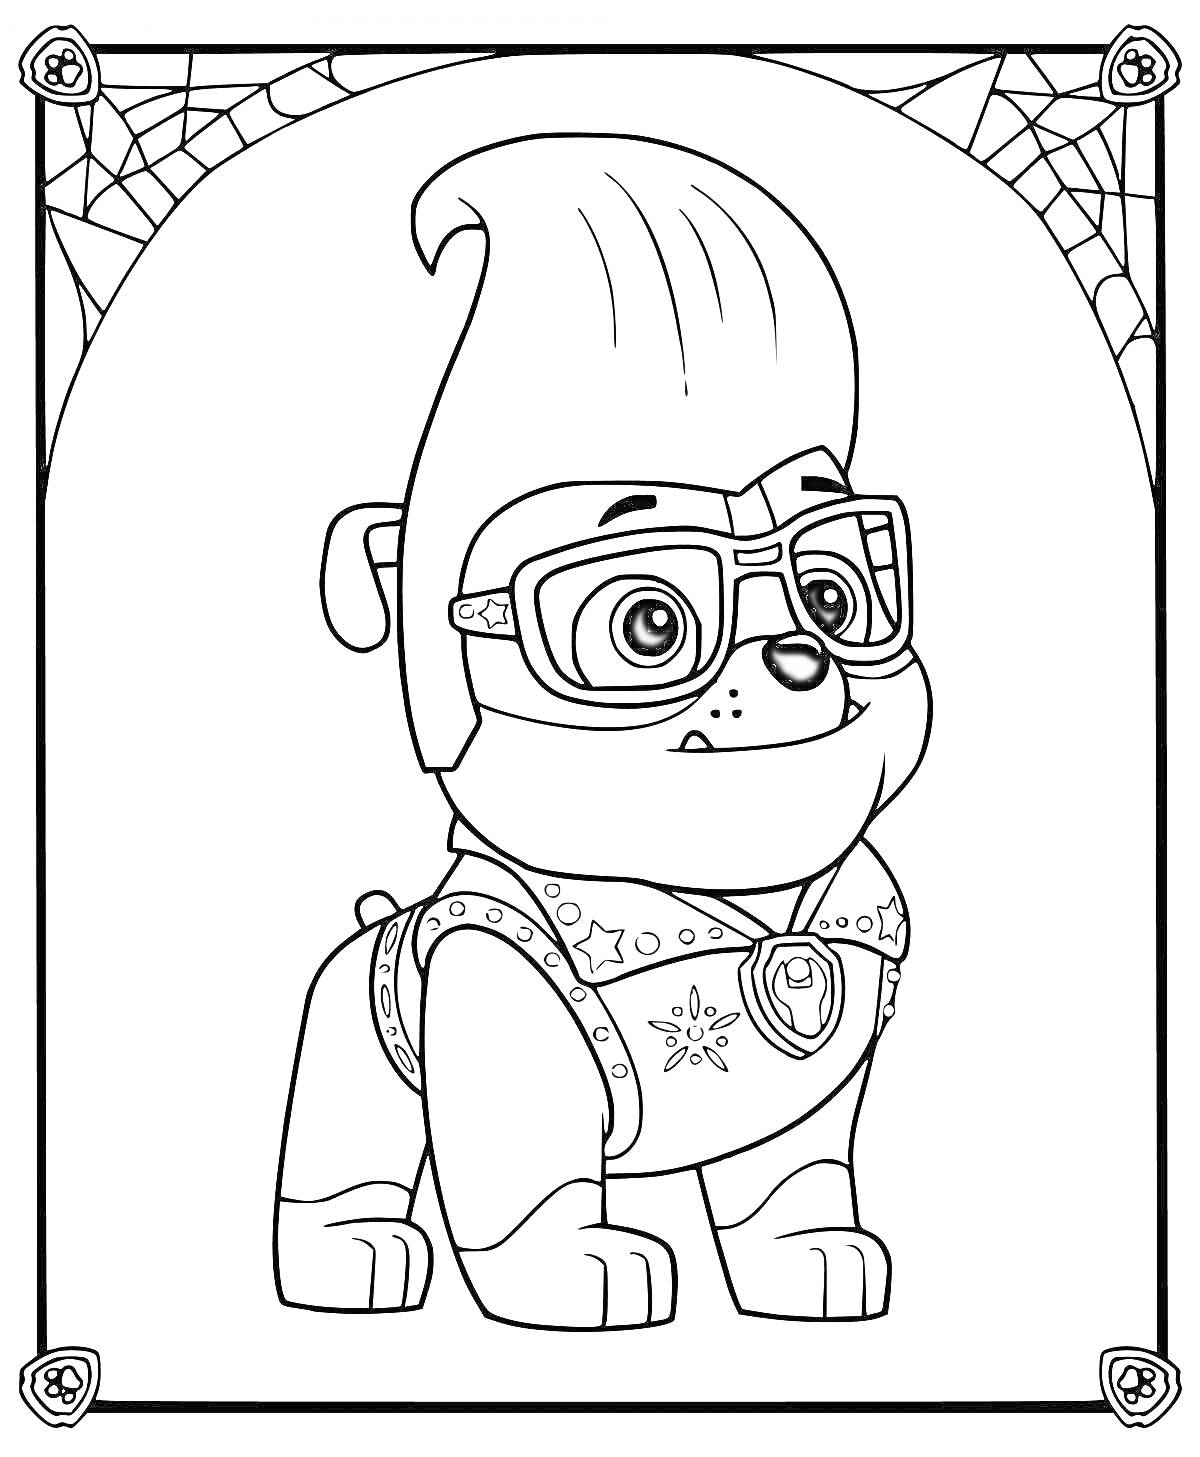 Раскраска Щенок в очках с высоким ирокезом, с узором в виде звезд и паутиной в углах рисунка